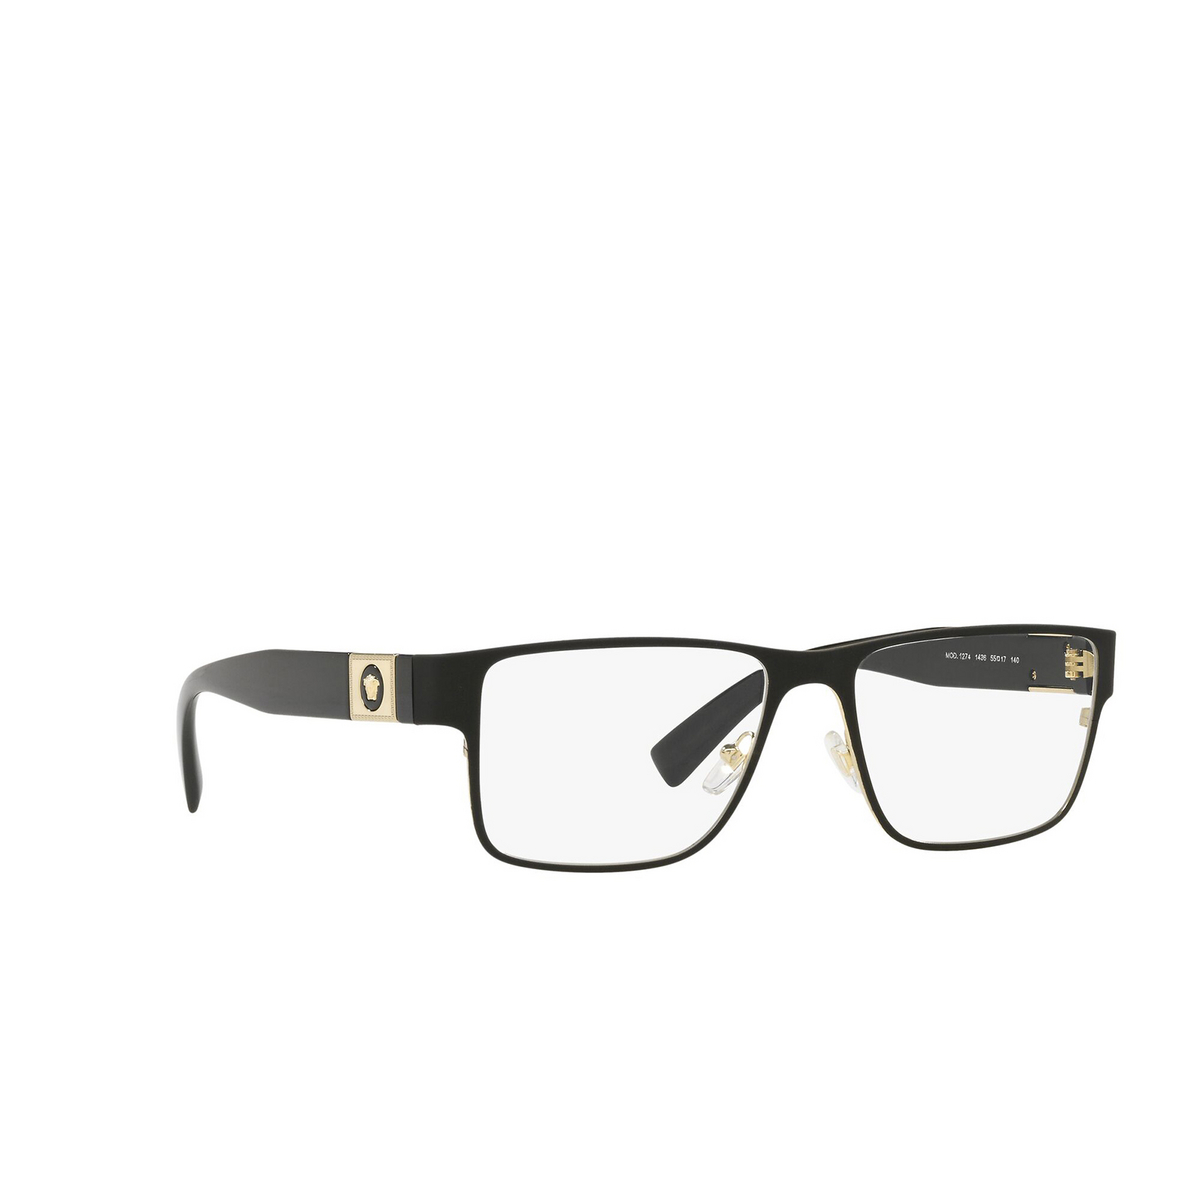 Versace® Rectangle Eyeglasses: VE1274 color Matte Blak / Gold 1436 - three-quarters view.